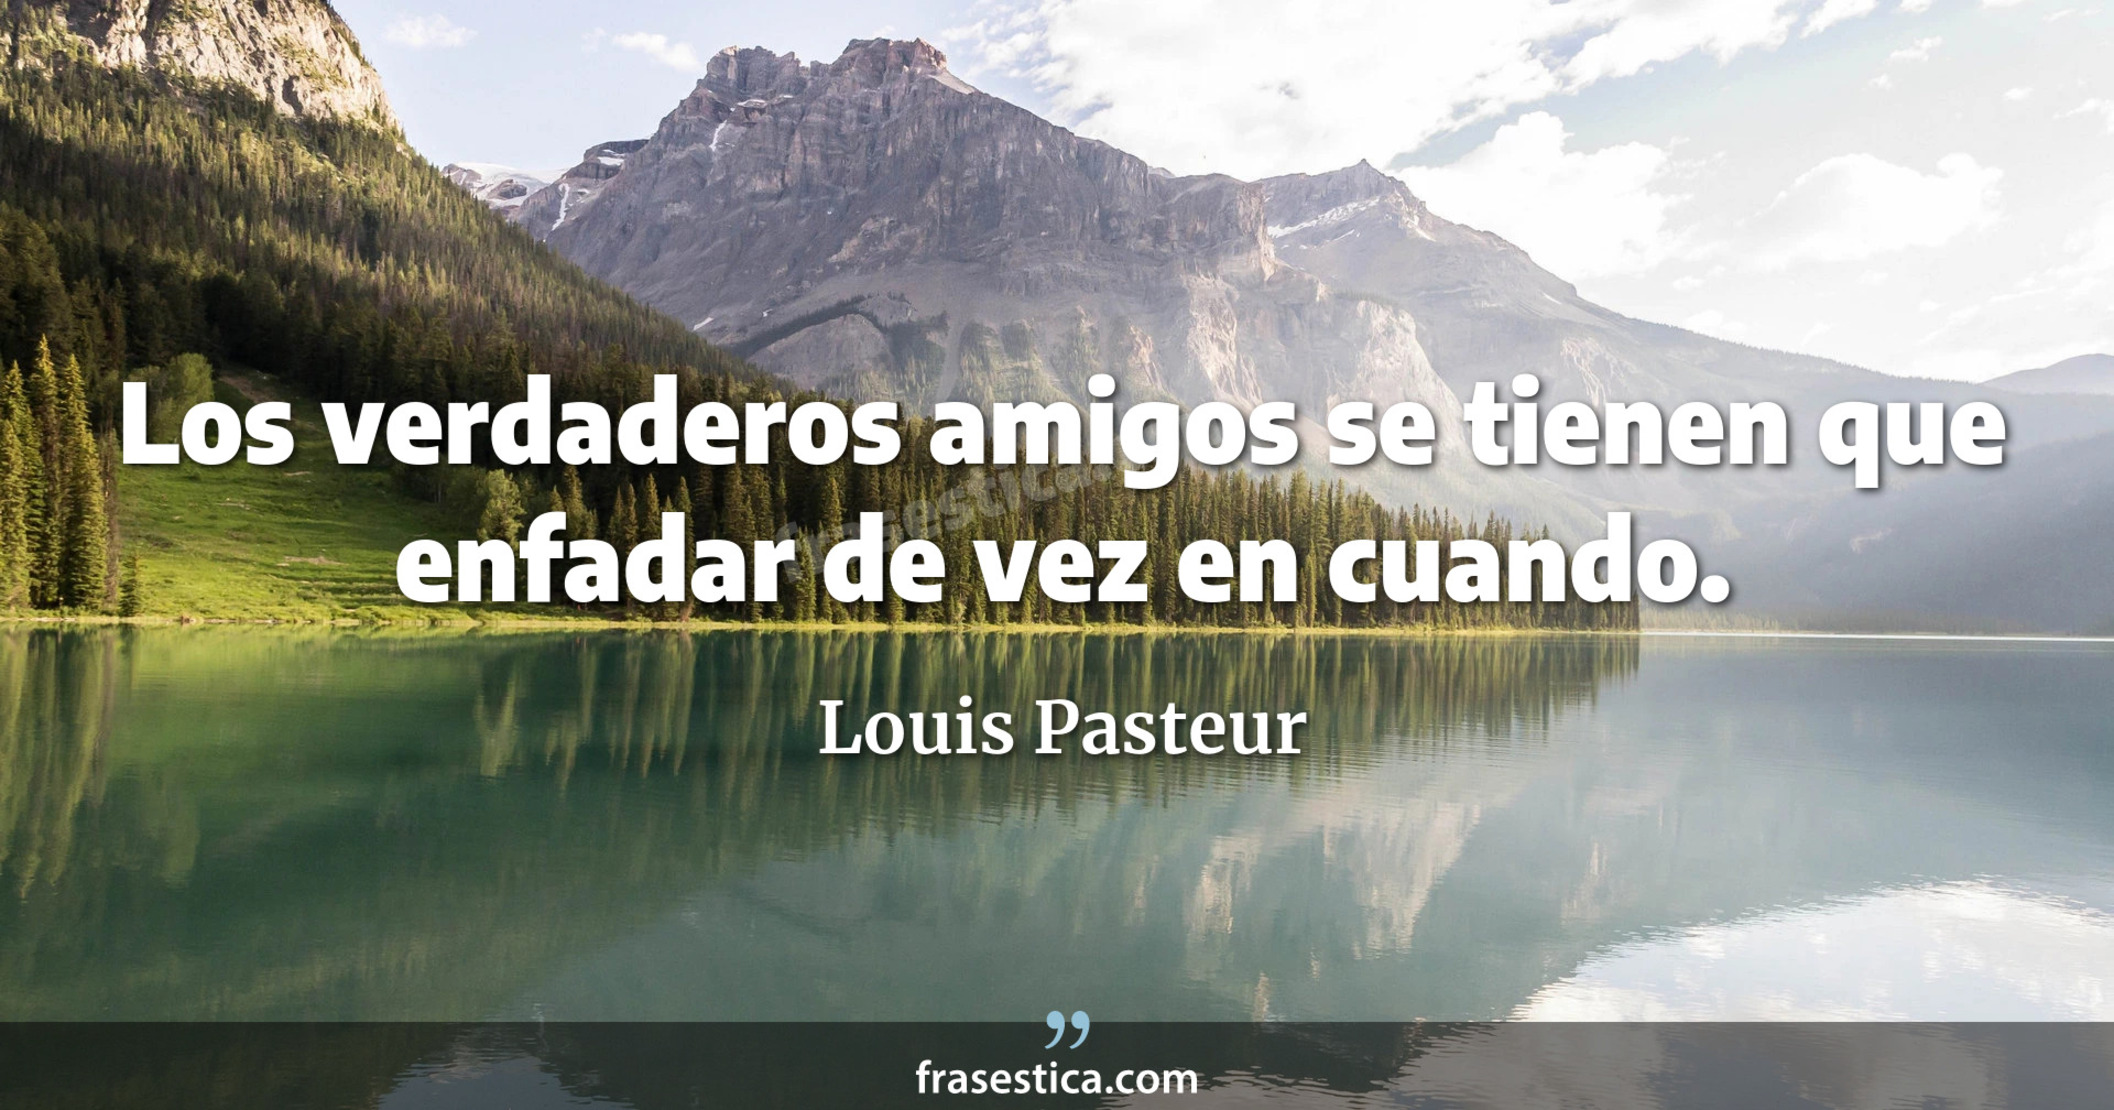 Los verdaderos amigos se tienen que enfadar de vez en cuando. - Louis Pasteur